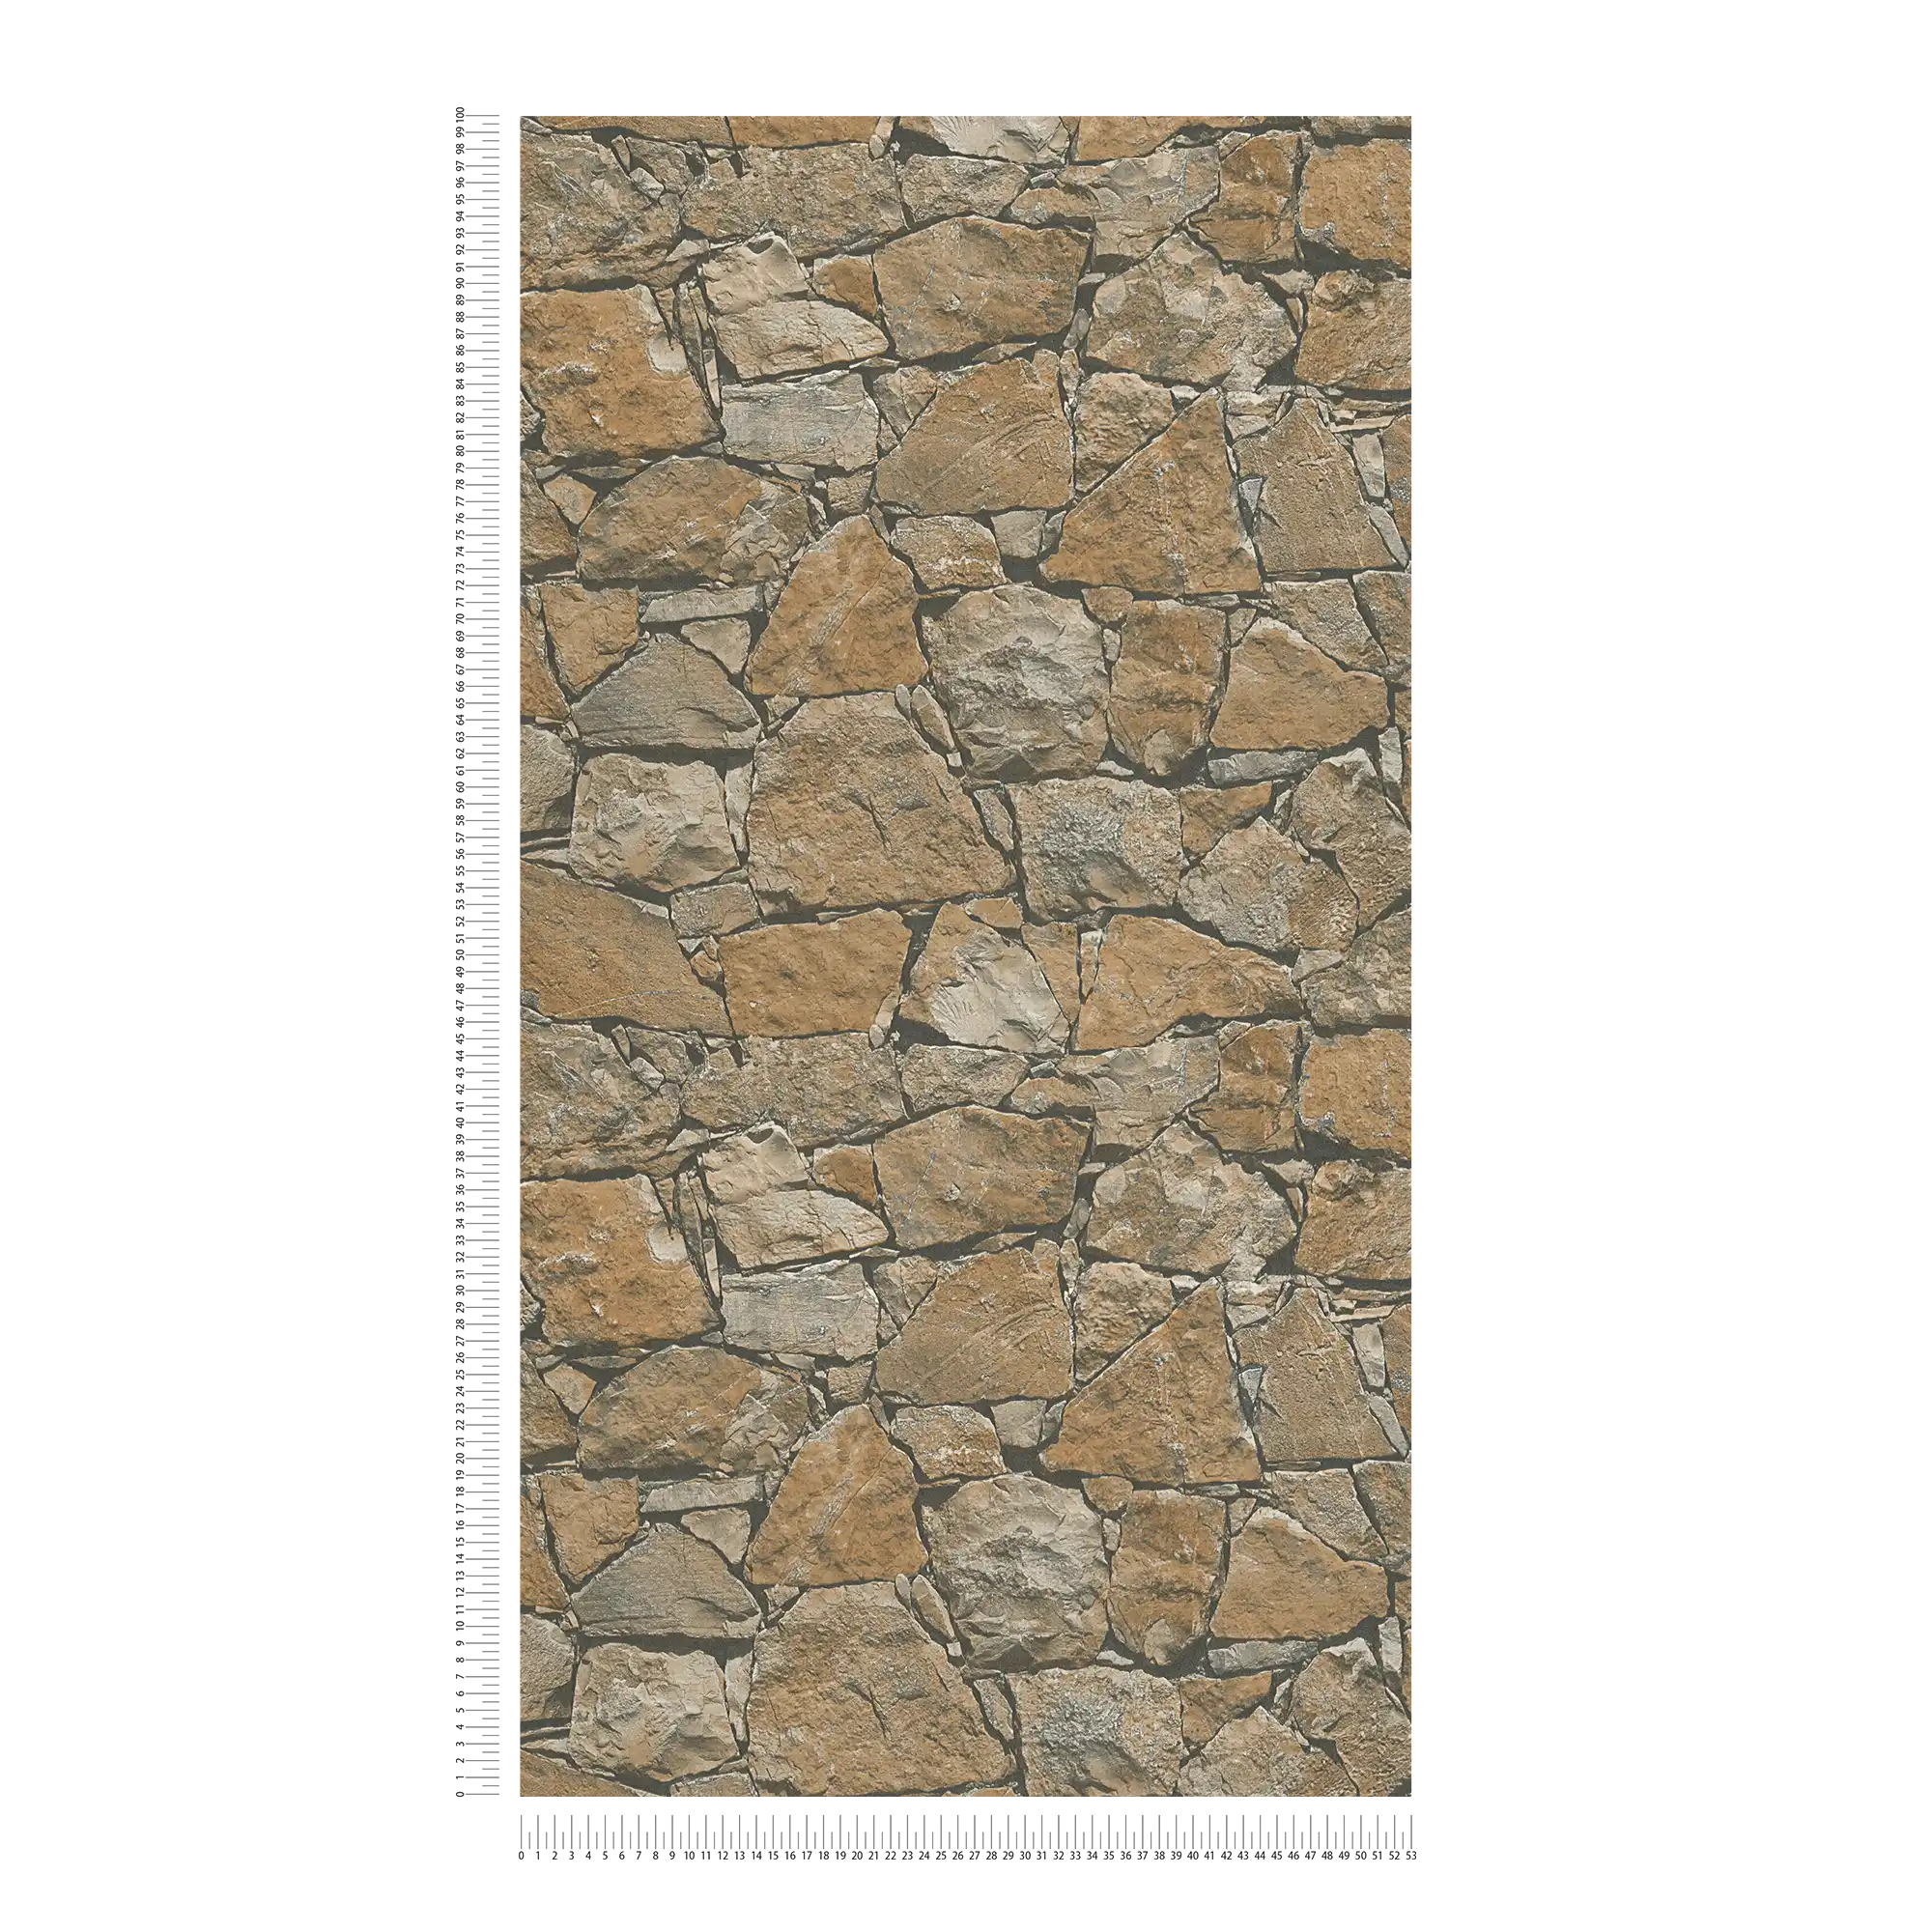             Carta da parati in pietra naturale con aspetto realistico delle pareti - marrone, beige, nero
        